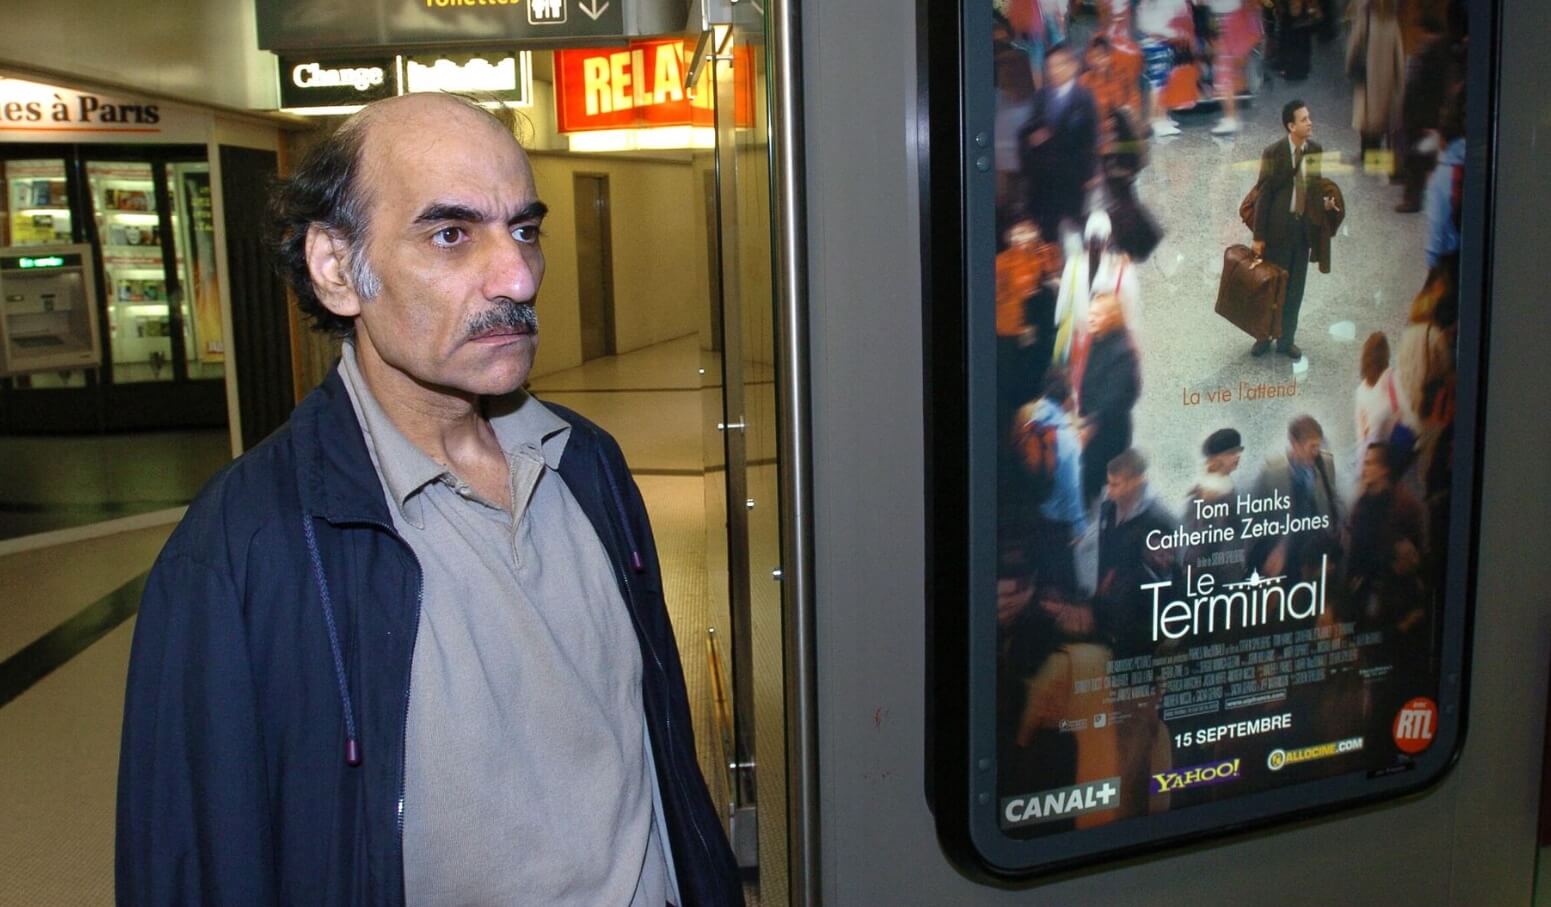 Человек жил в аэропорту 18 лет. Как проходил каждый его день? Мехран Карими Нассери рядом с афишей фильма «Терминал». Фото.